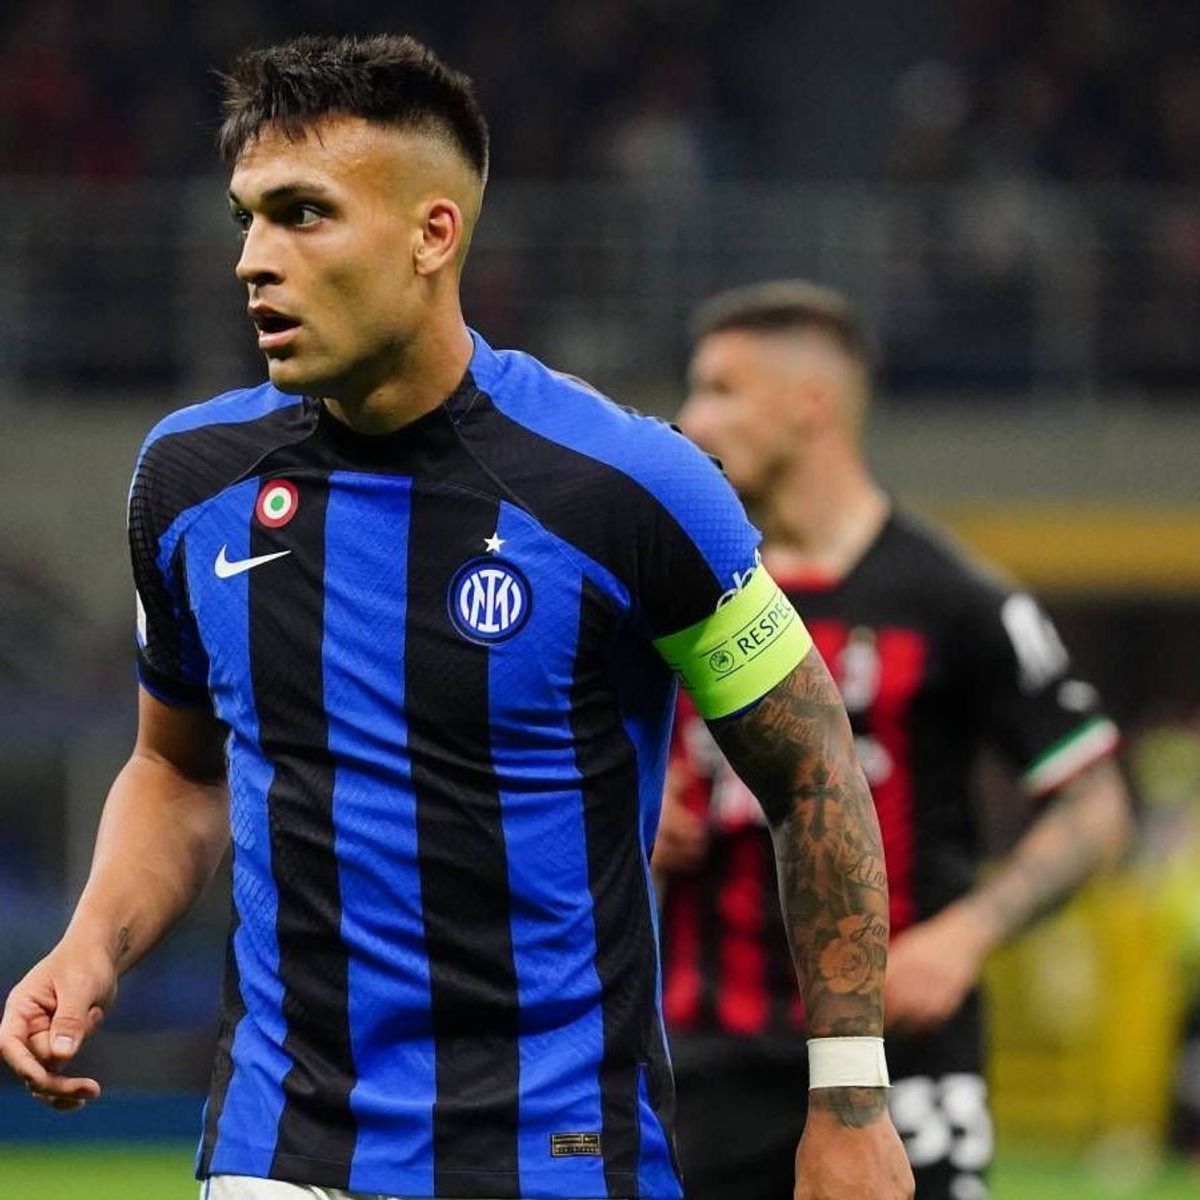 Inter Mailand und AS Rom ohne Trikotsponsor - was steckt dahinter?